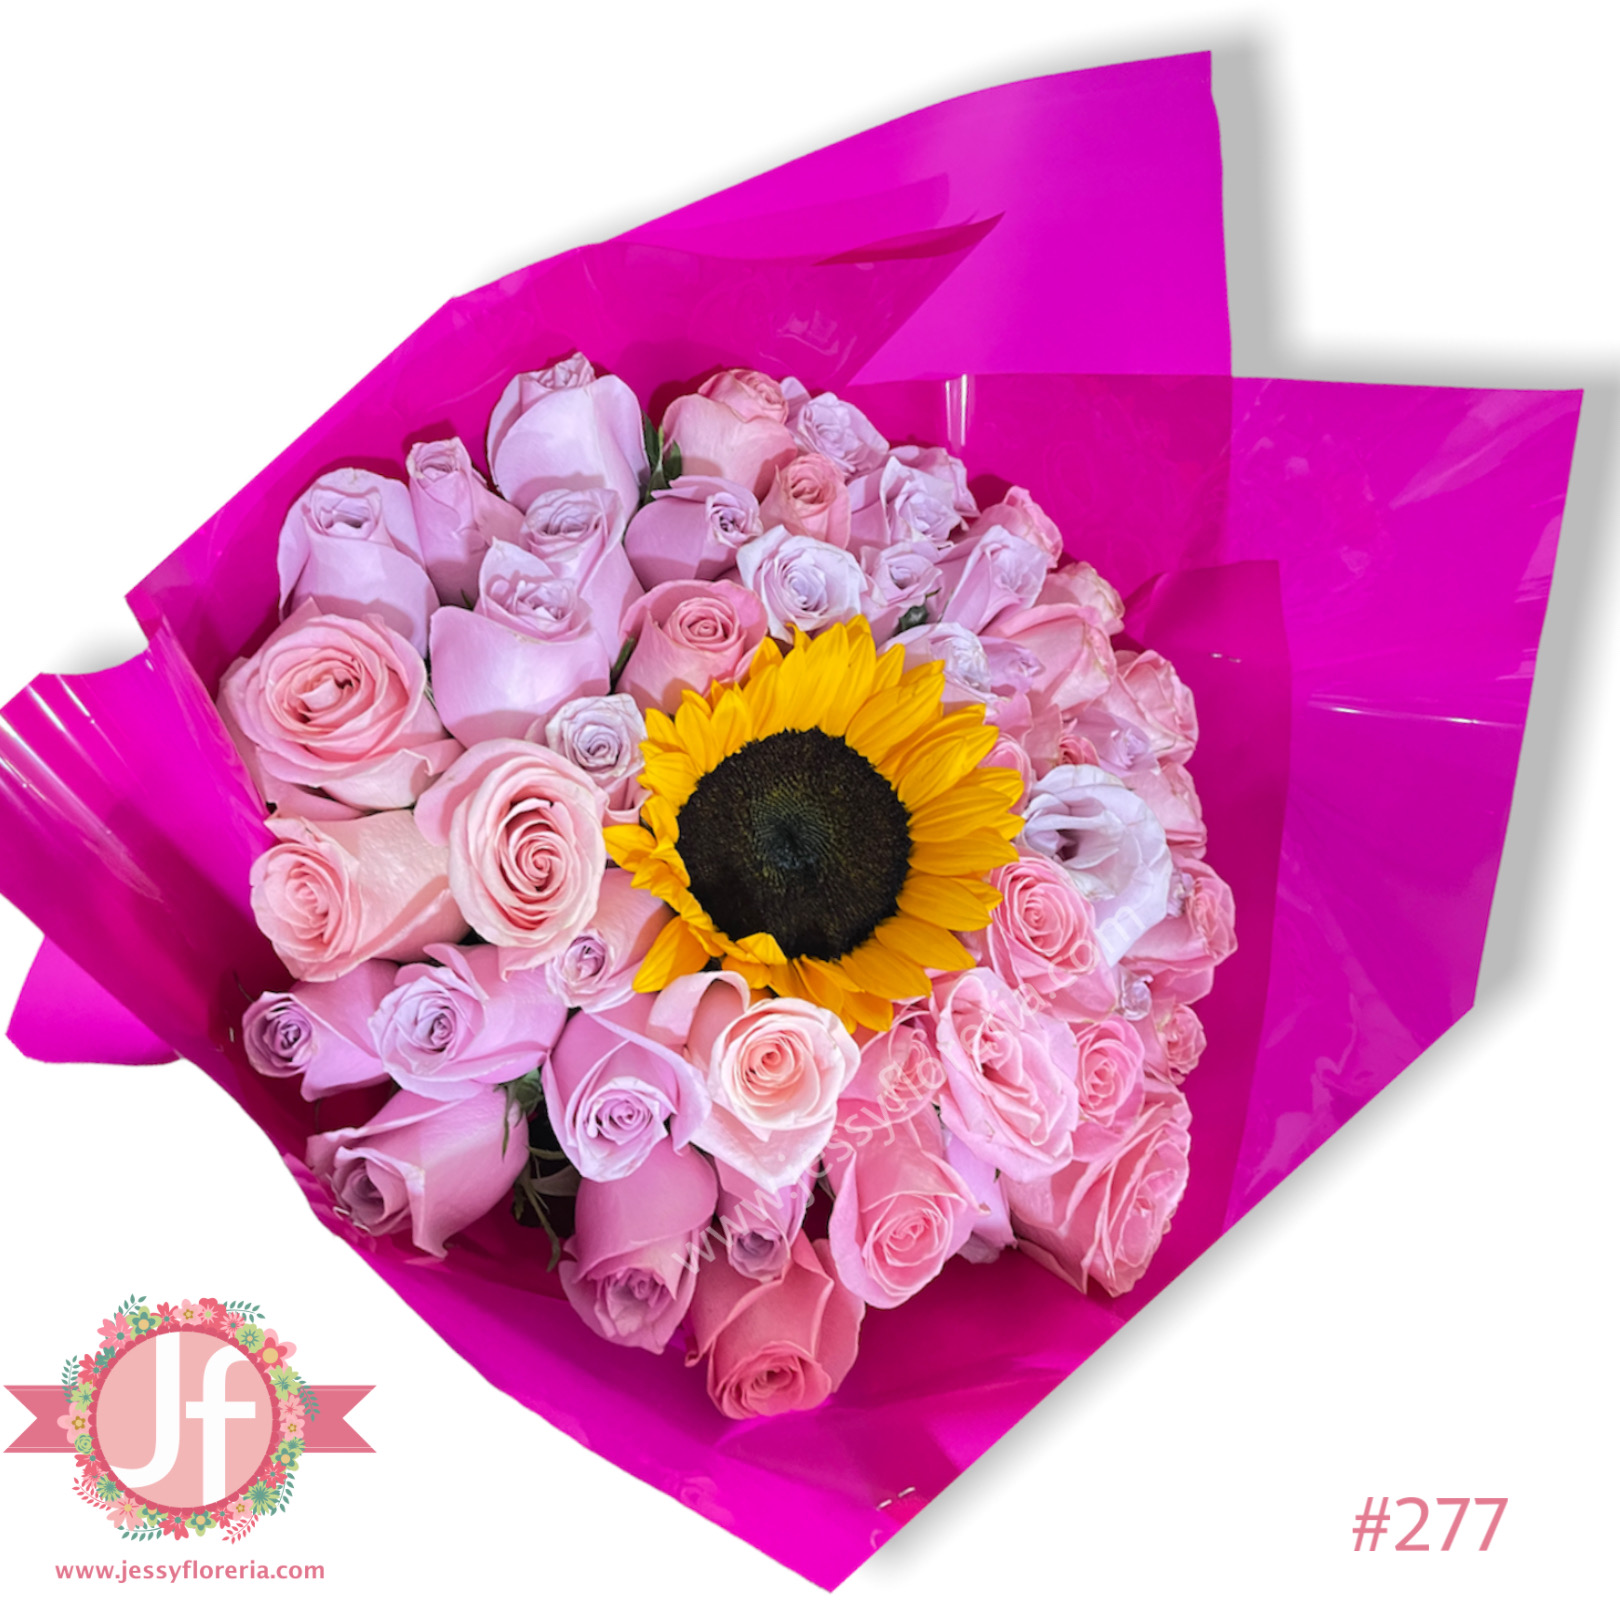 Ramo de 50 rosas rositas y girasol - Envío GRATIS mismo día 2-4 Hrs